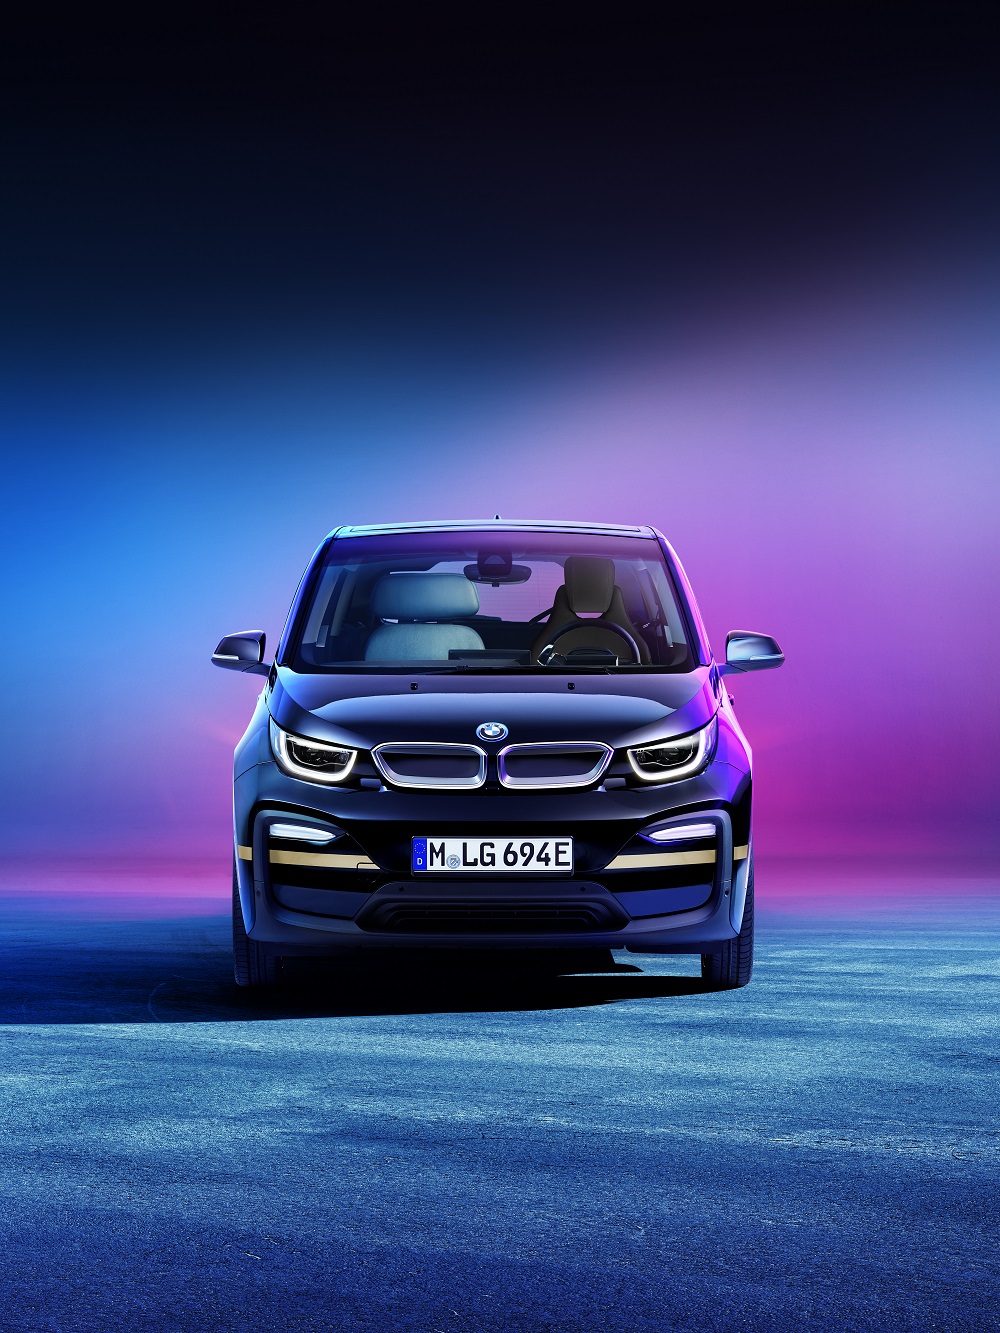 BMW zaprezentowało nową wizję elektryka BMW i3 Urban